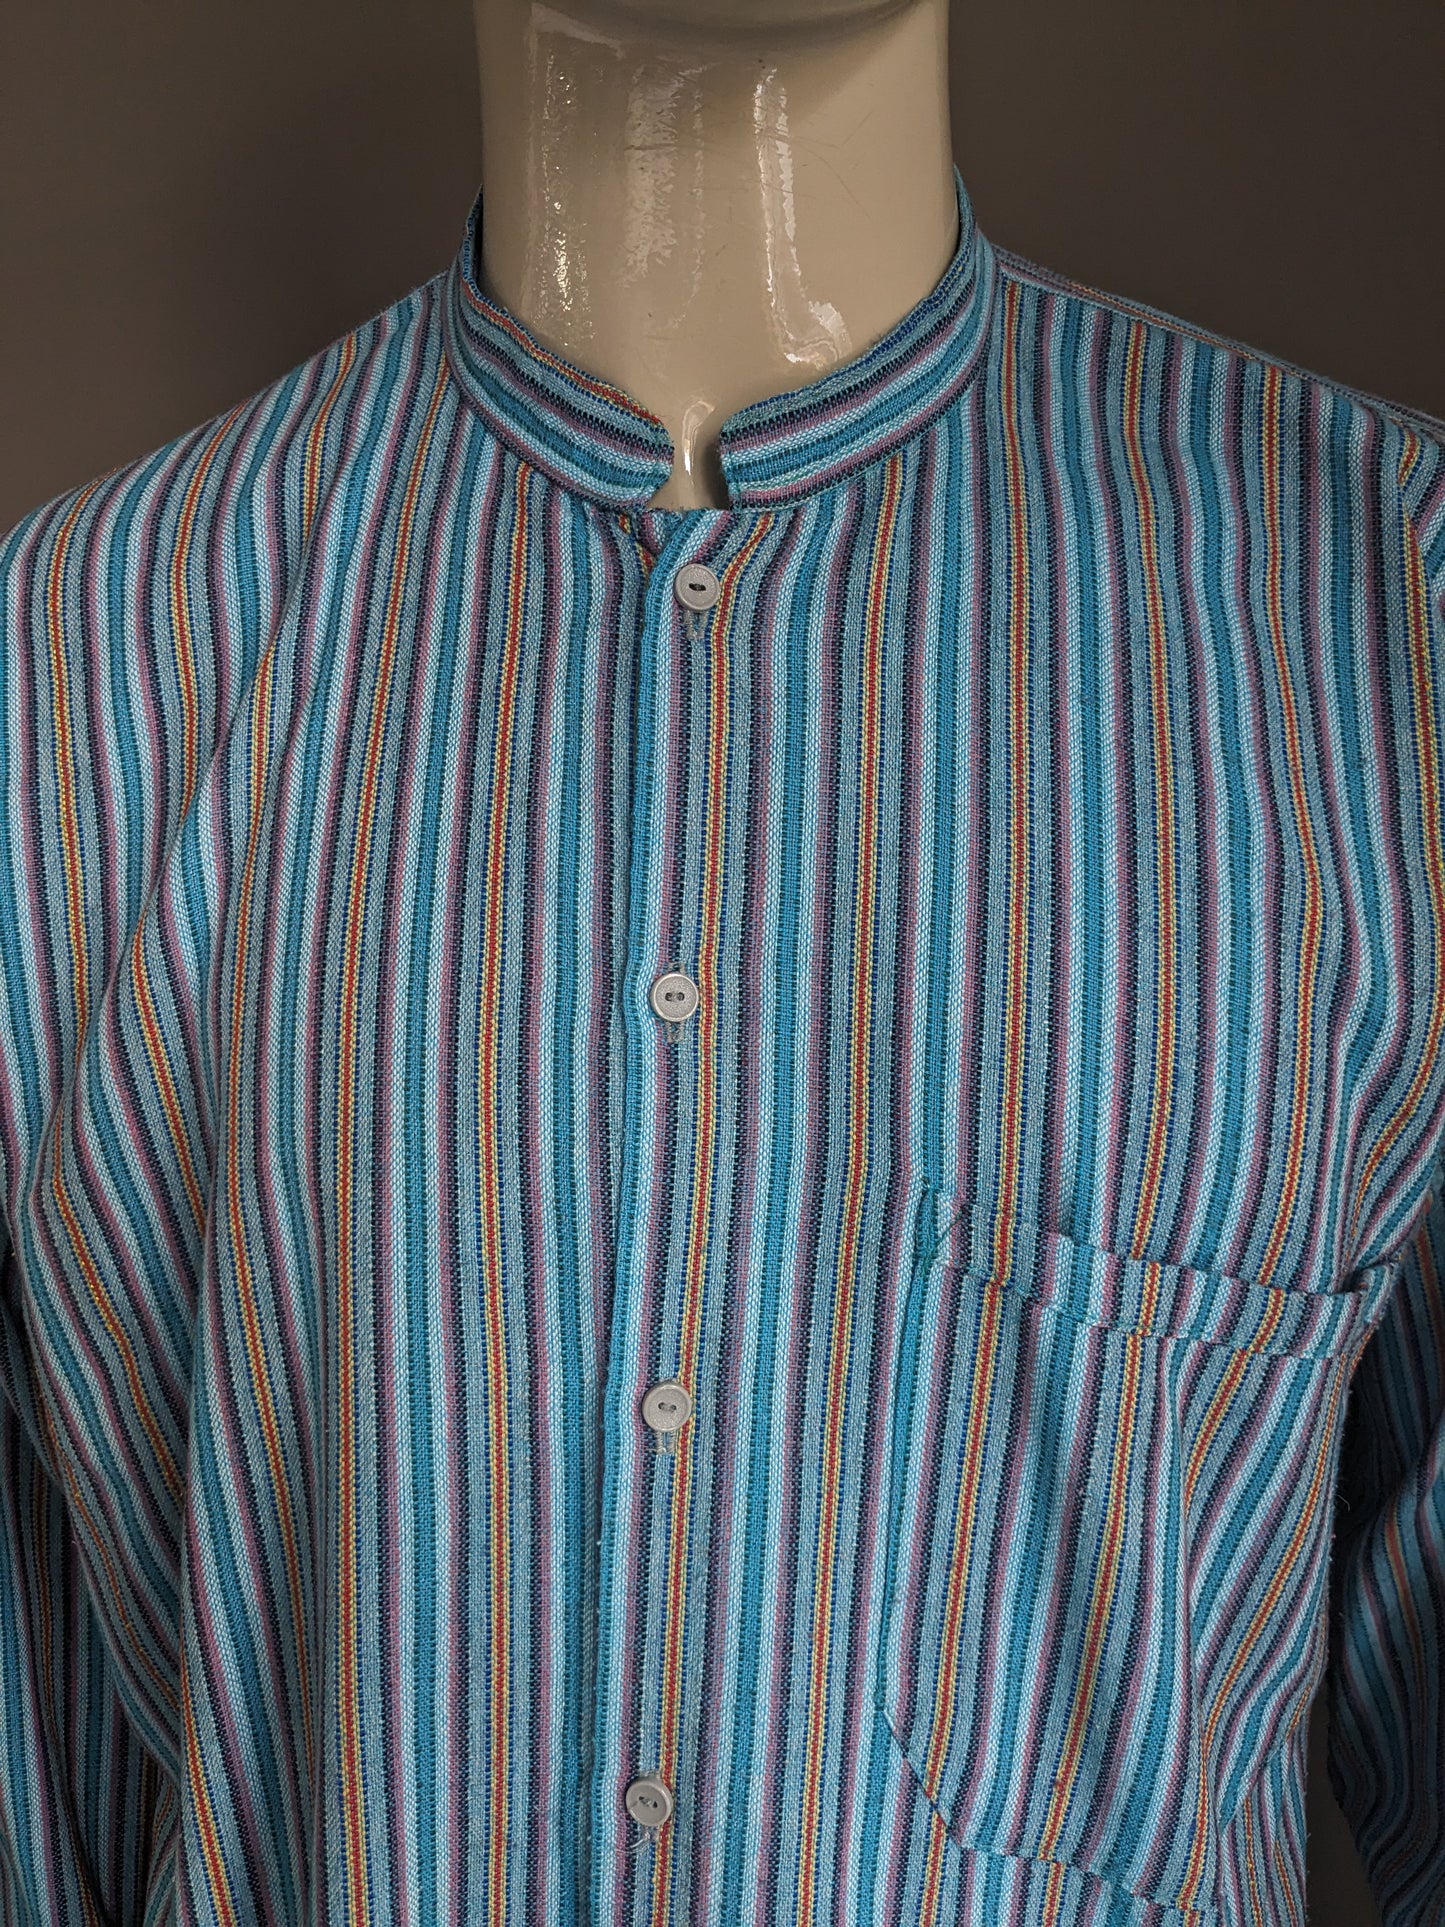 Camisa vintage con mao / agricultor / cuello de pie. Azul Púrpura rojo amarillo rayado. Tamaño xl.